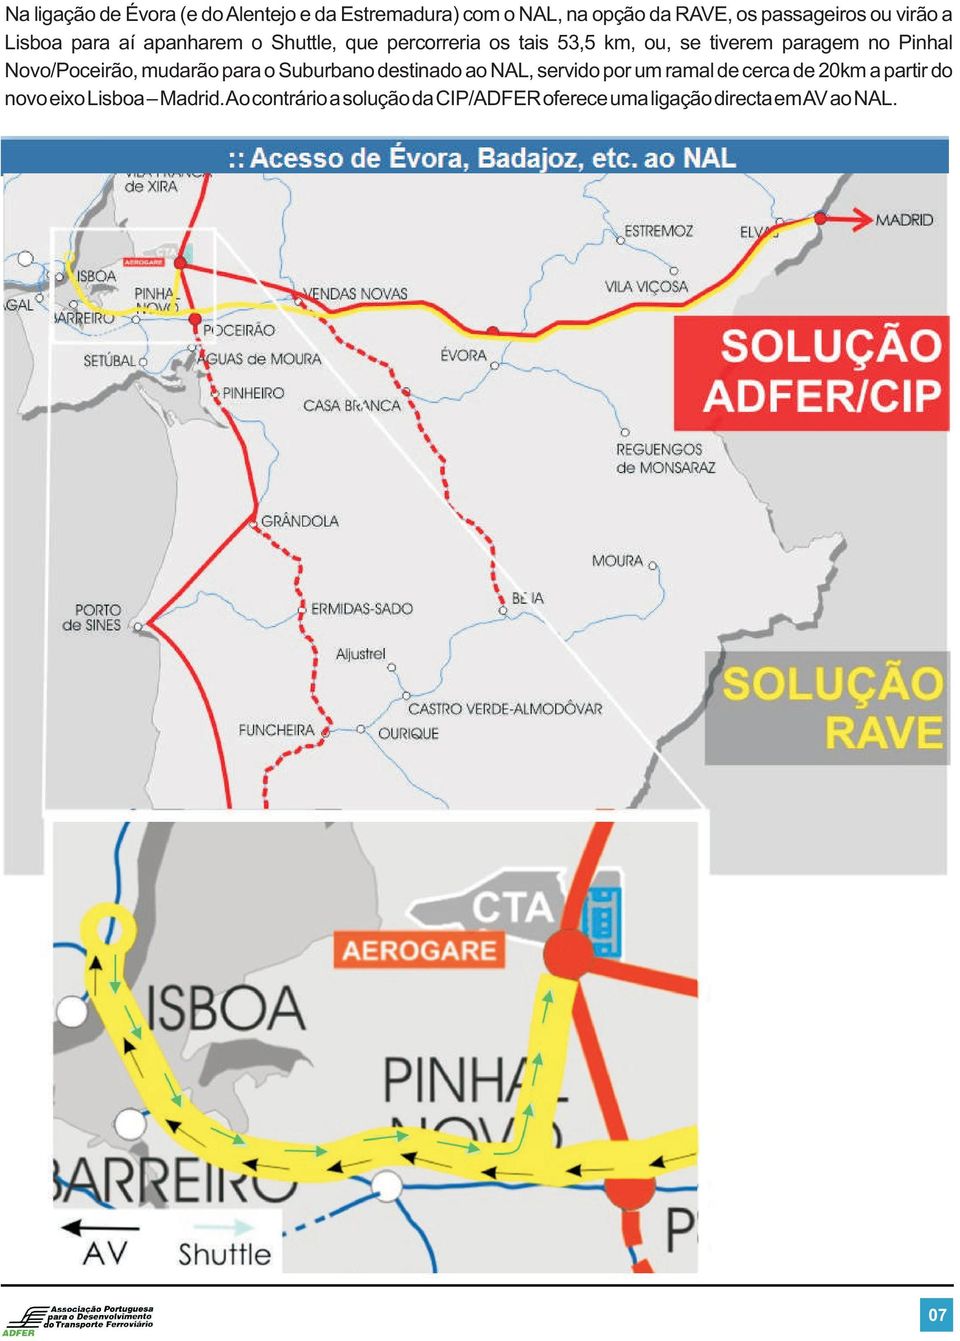 Novo/Poceirão, mudarão para o Suburbano destinado ao NAL, servido por um ramal de cerca de 20km a partir